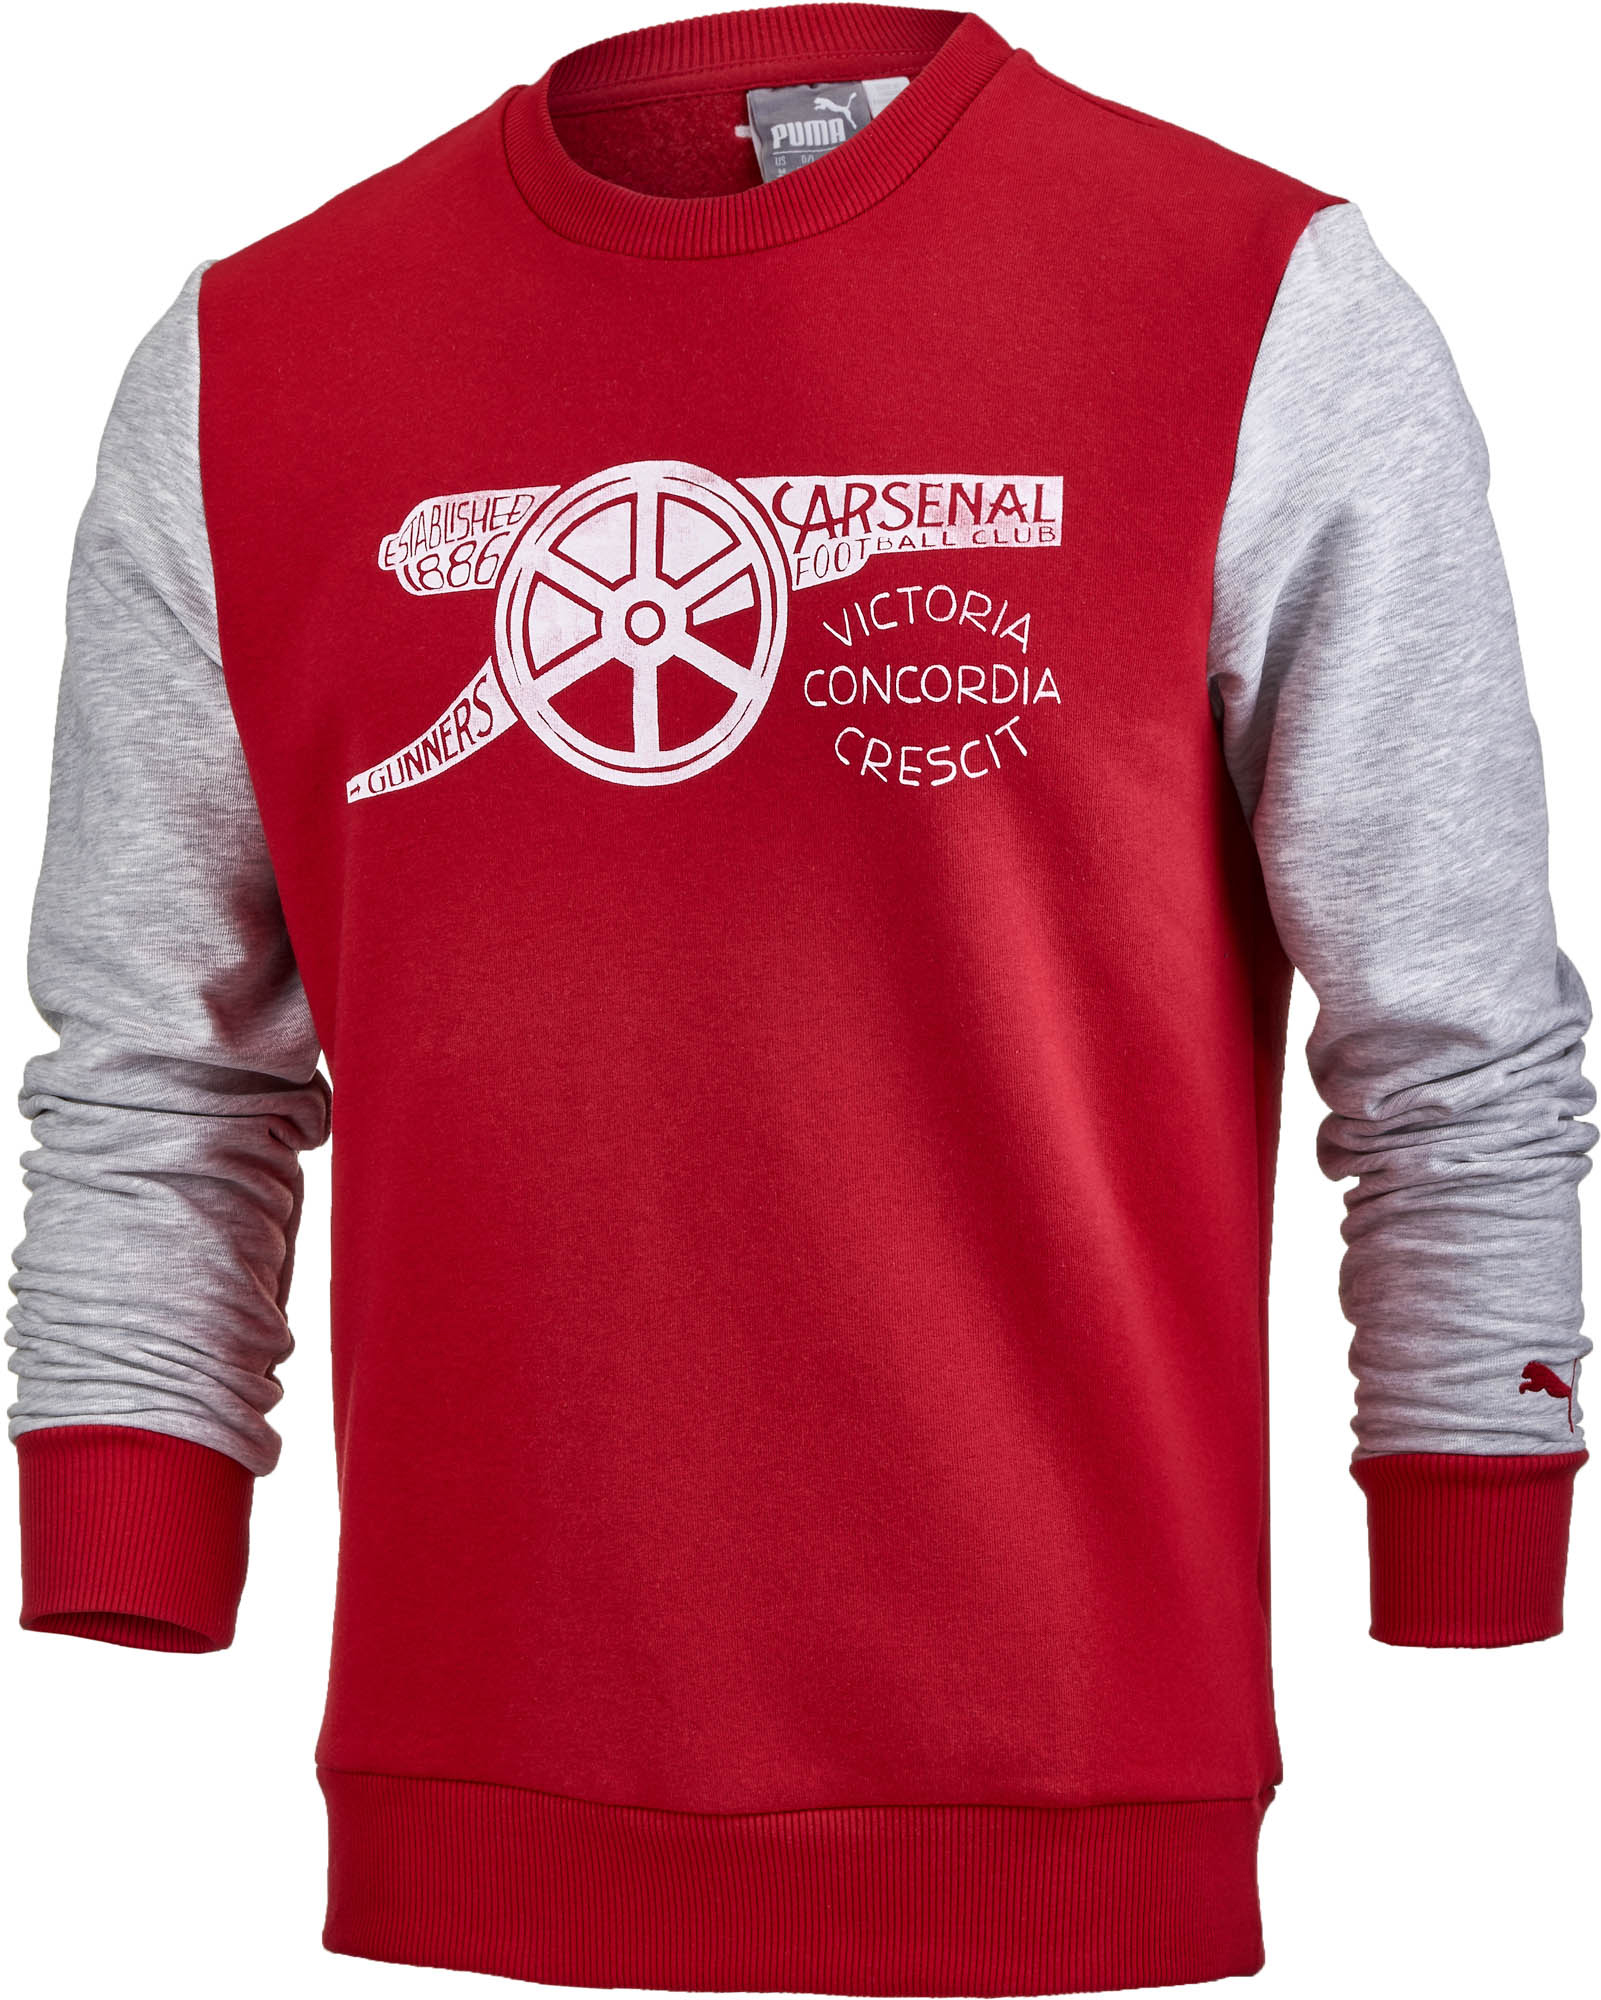 Puma Arsenal Fan Sweatshirt - SoccerPro.com